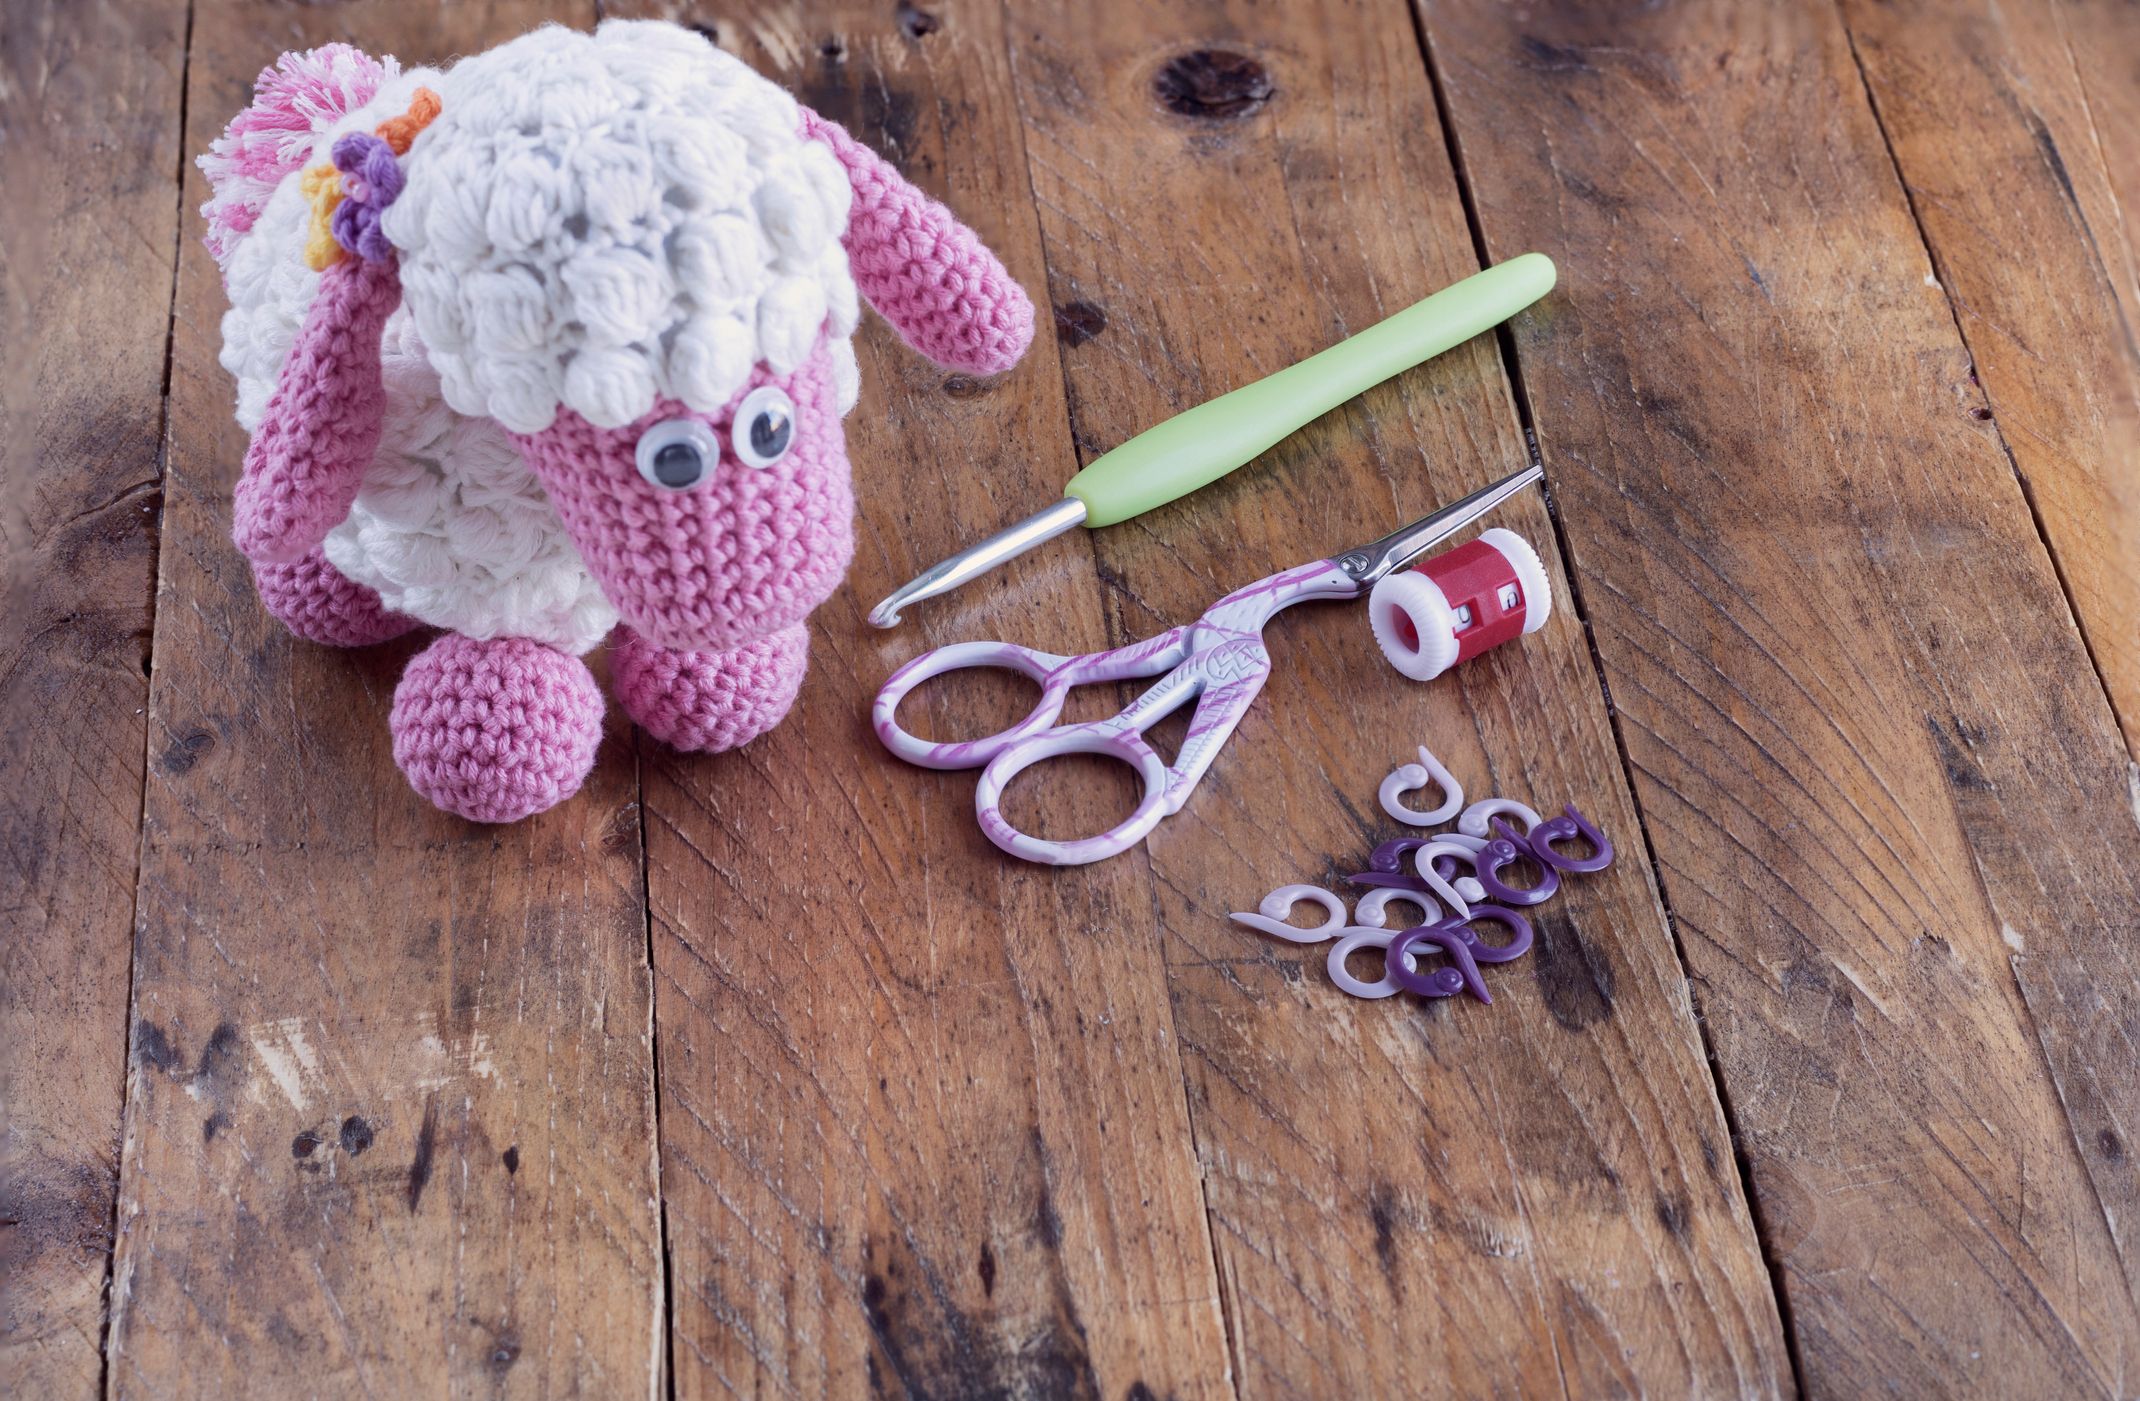 Tricot, crochet : Fabriquer un doudou ou un Amigurumi pour bébé